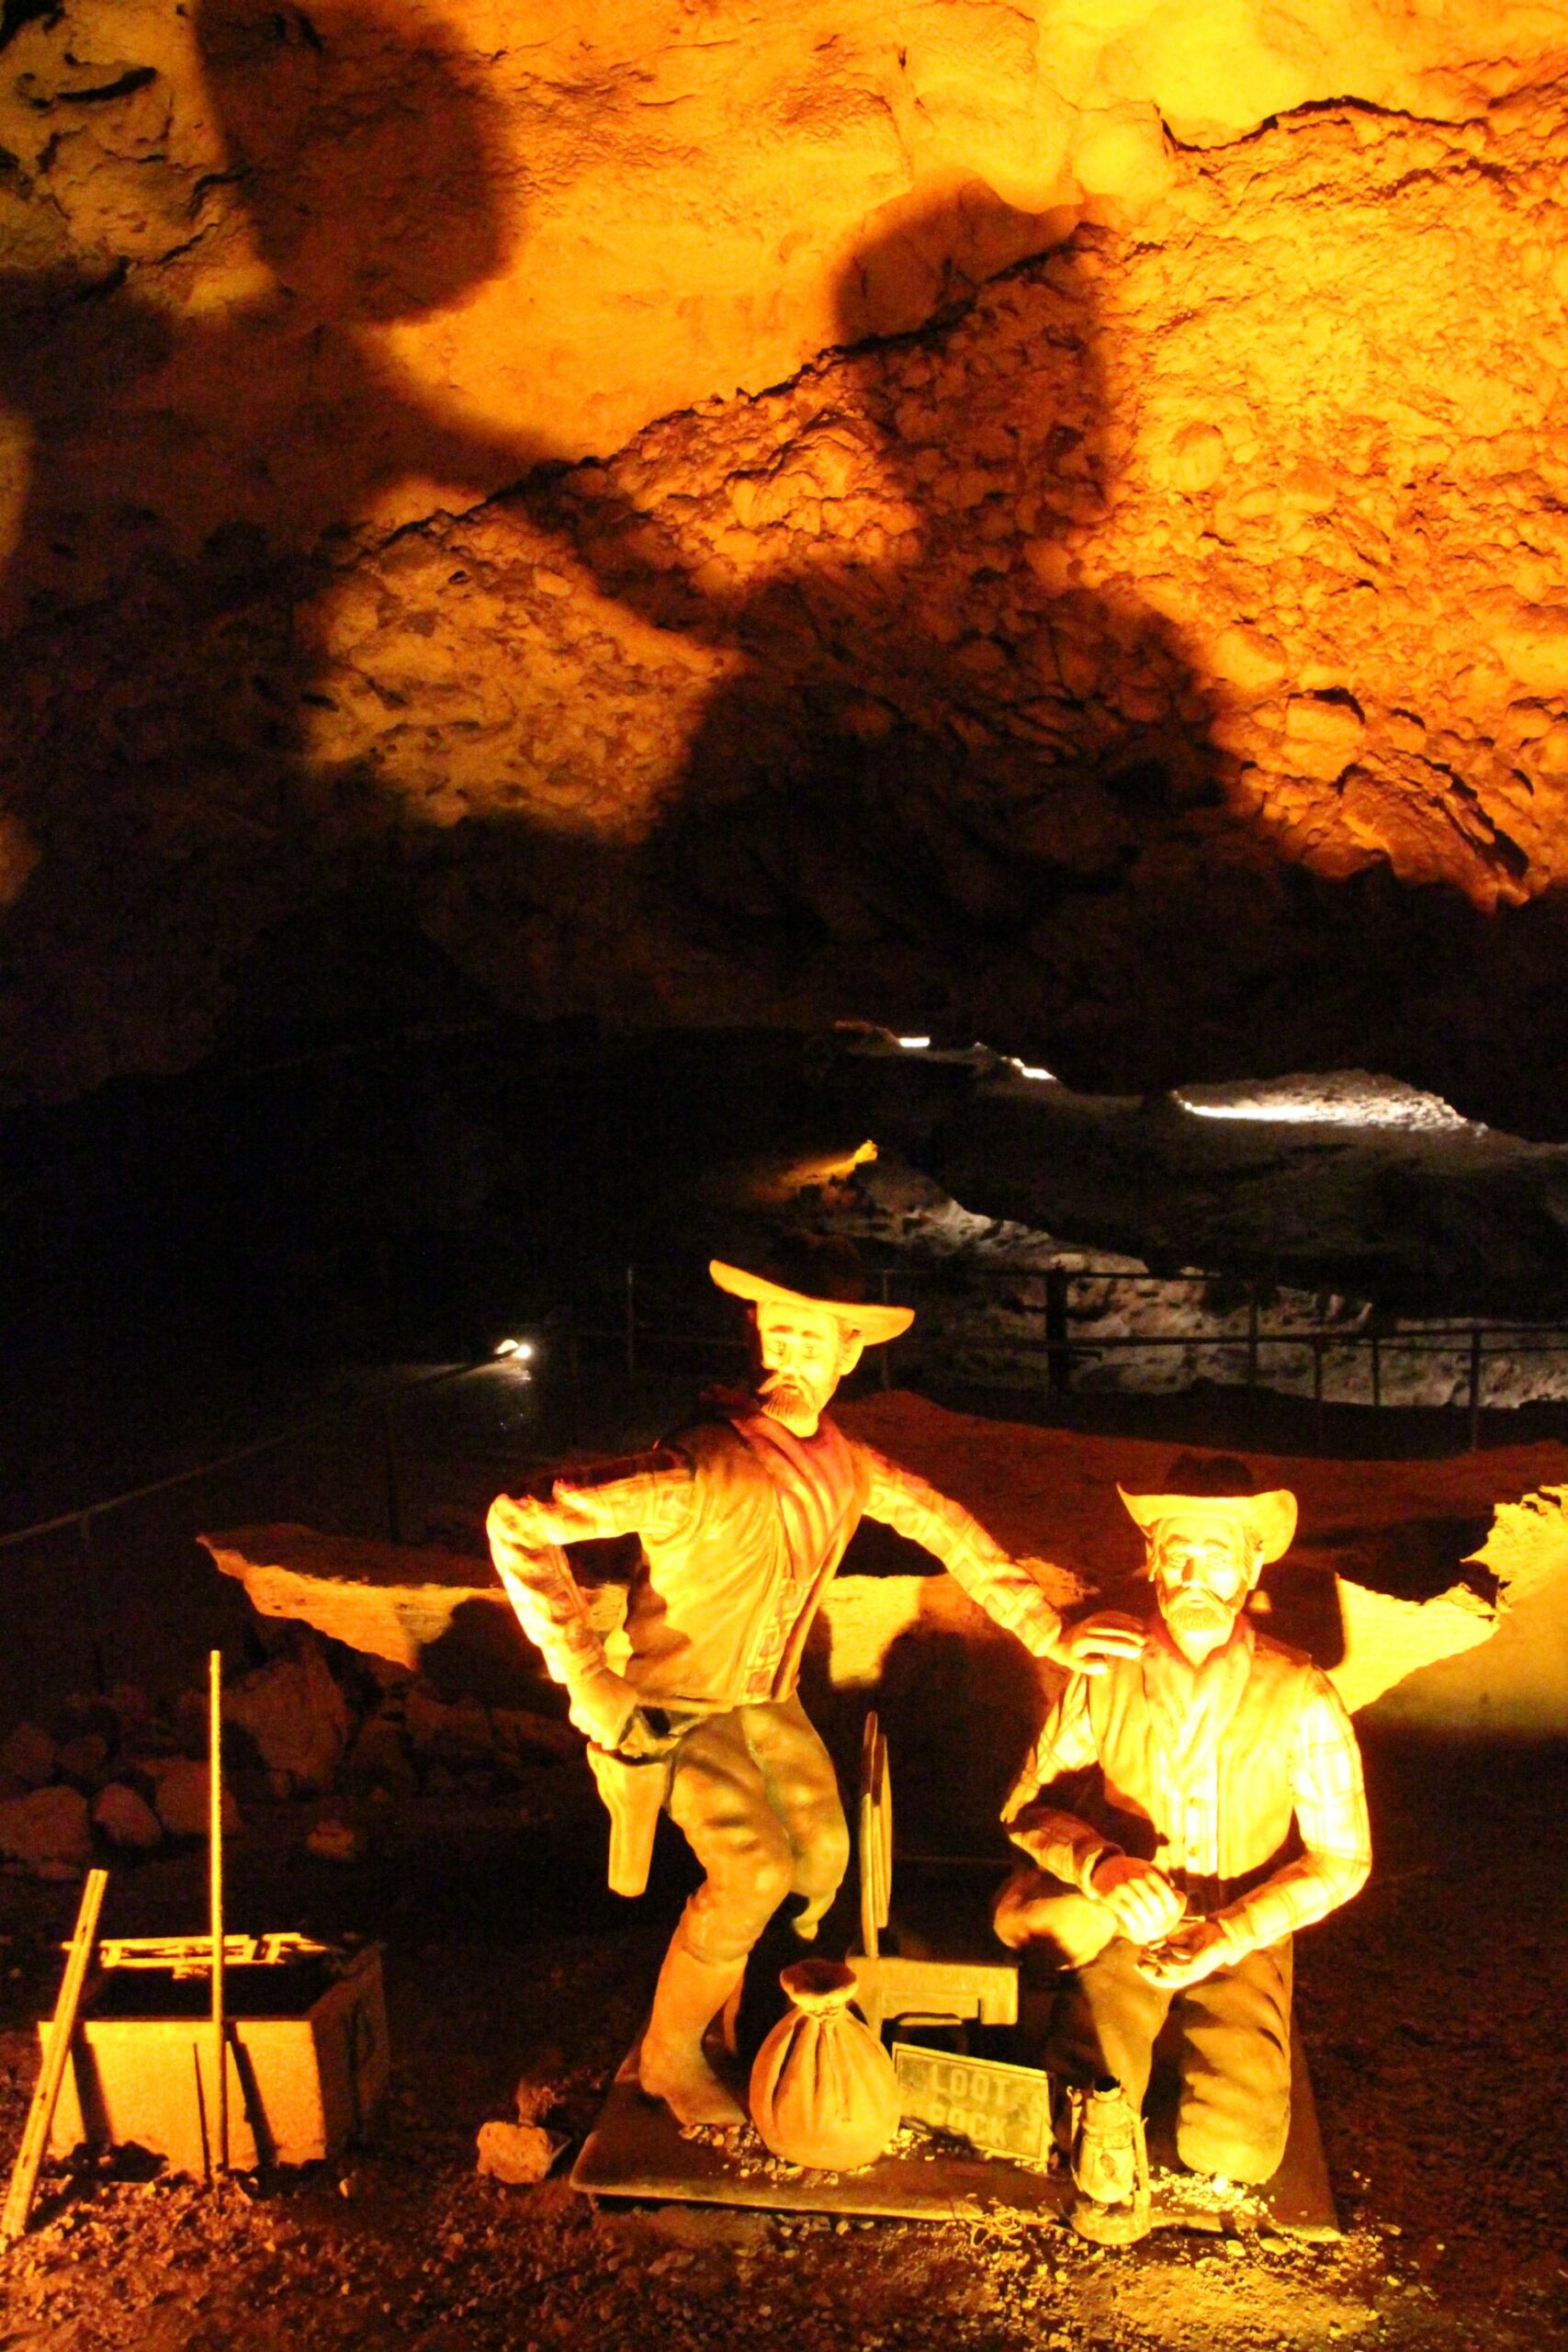 Meramec Caverns interior in Stanton, Missouri